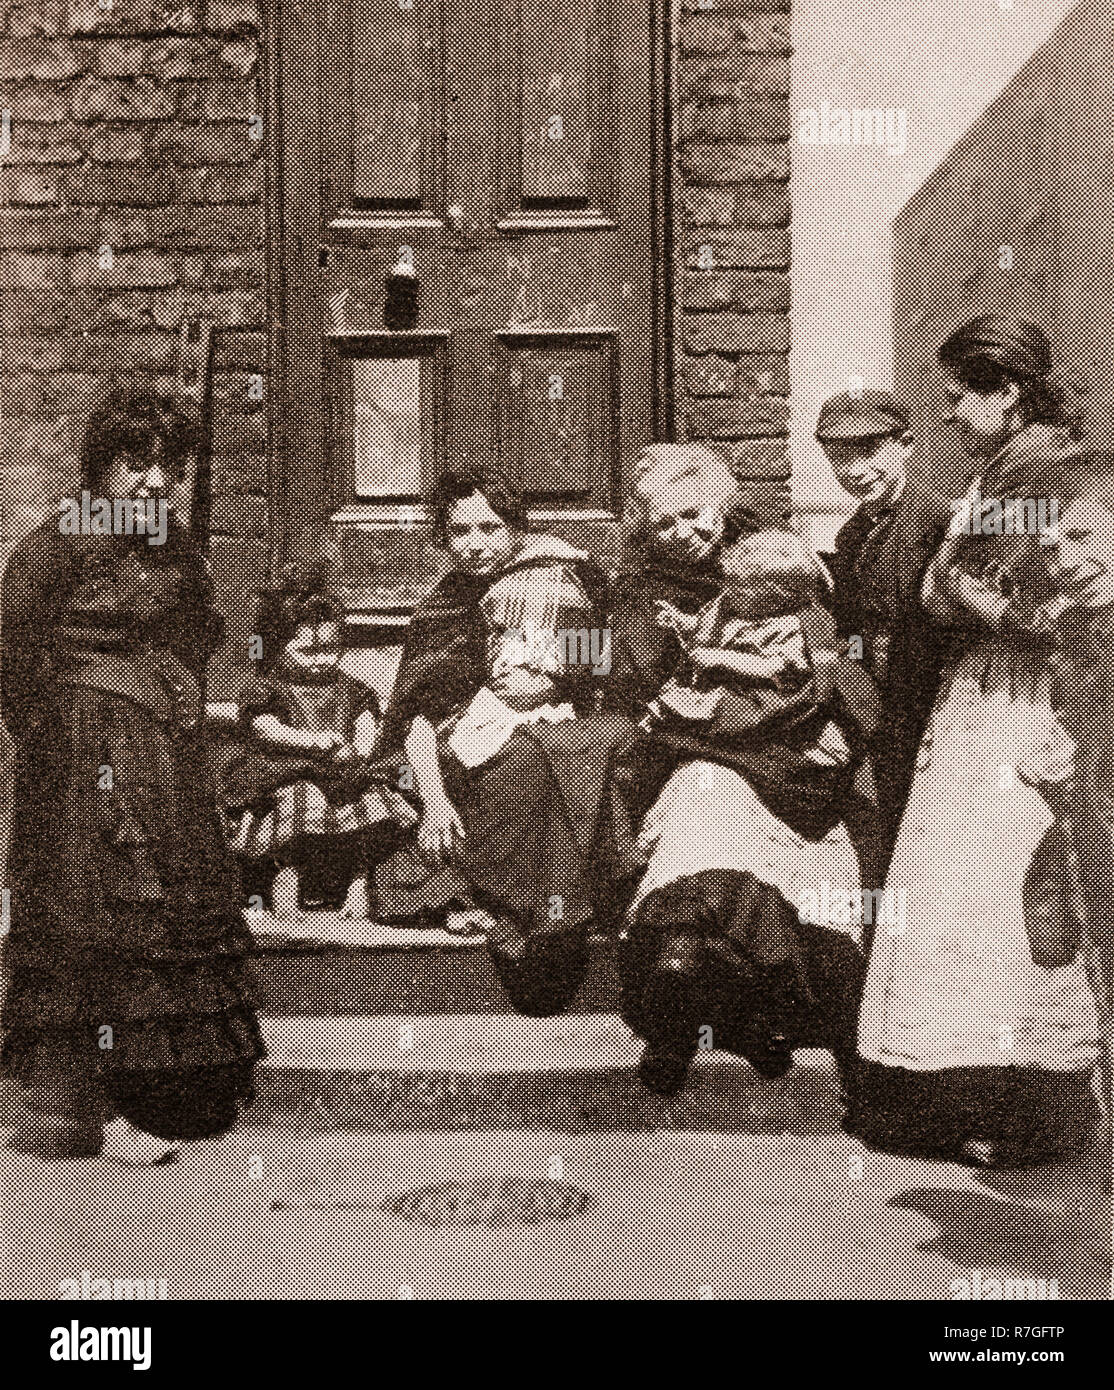 Leben für die Volksmusik im Viktorianischen Tage... Eine Familie auf den Stufen von ihrem Haus in der Curzon Street Liverpool, Merseyside, England sitzen Stockfoto